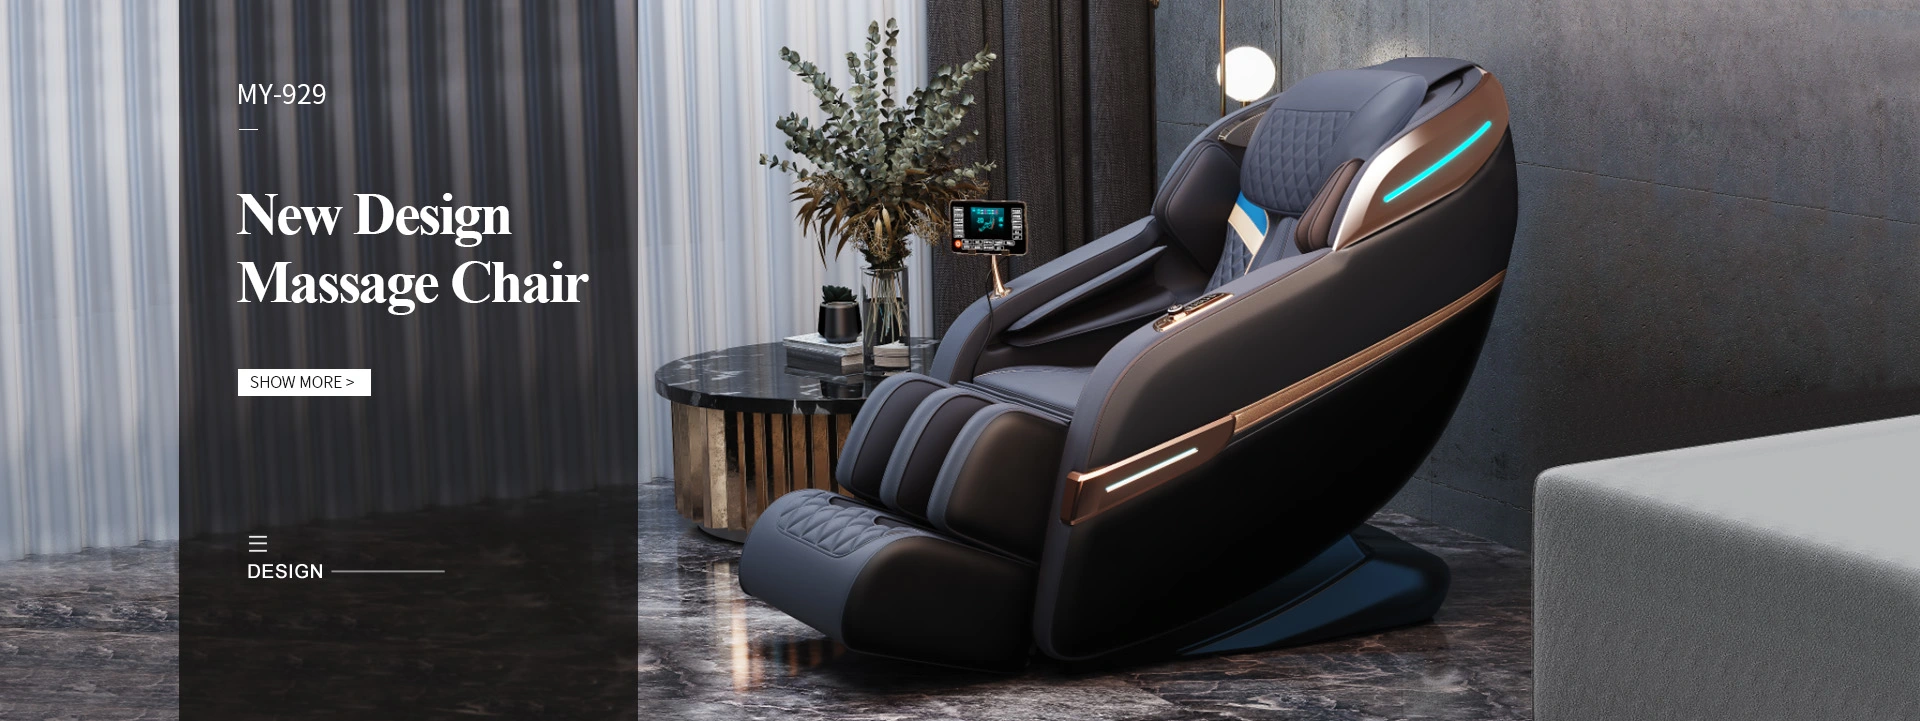 High quality massage chair,new design massage chair